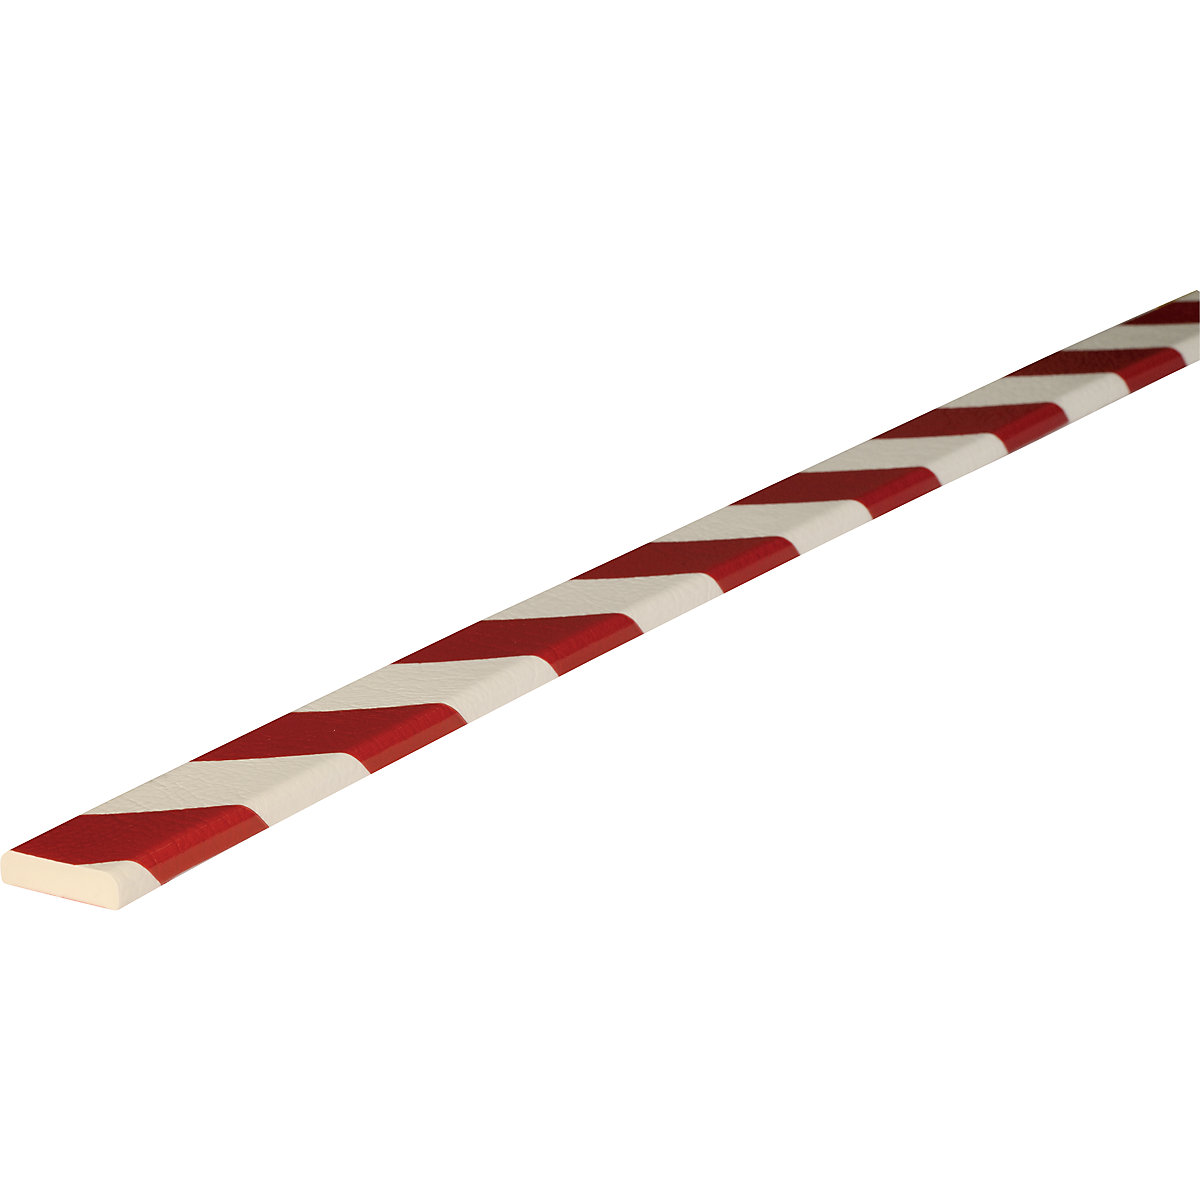 Knuffi®-oppervlaktebescherming – SHG, type F, stuk van 1 m, rood/wit-35